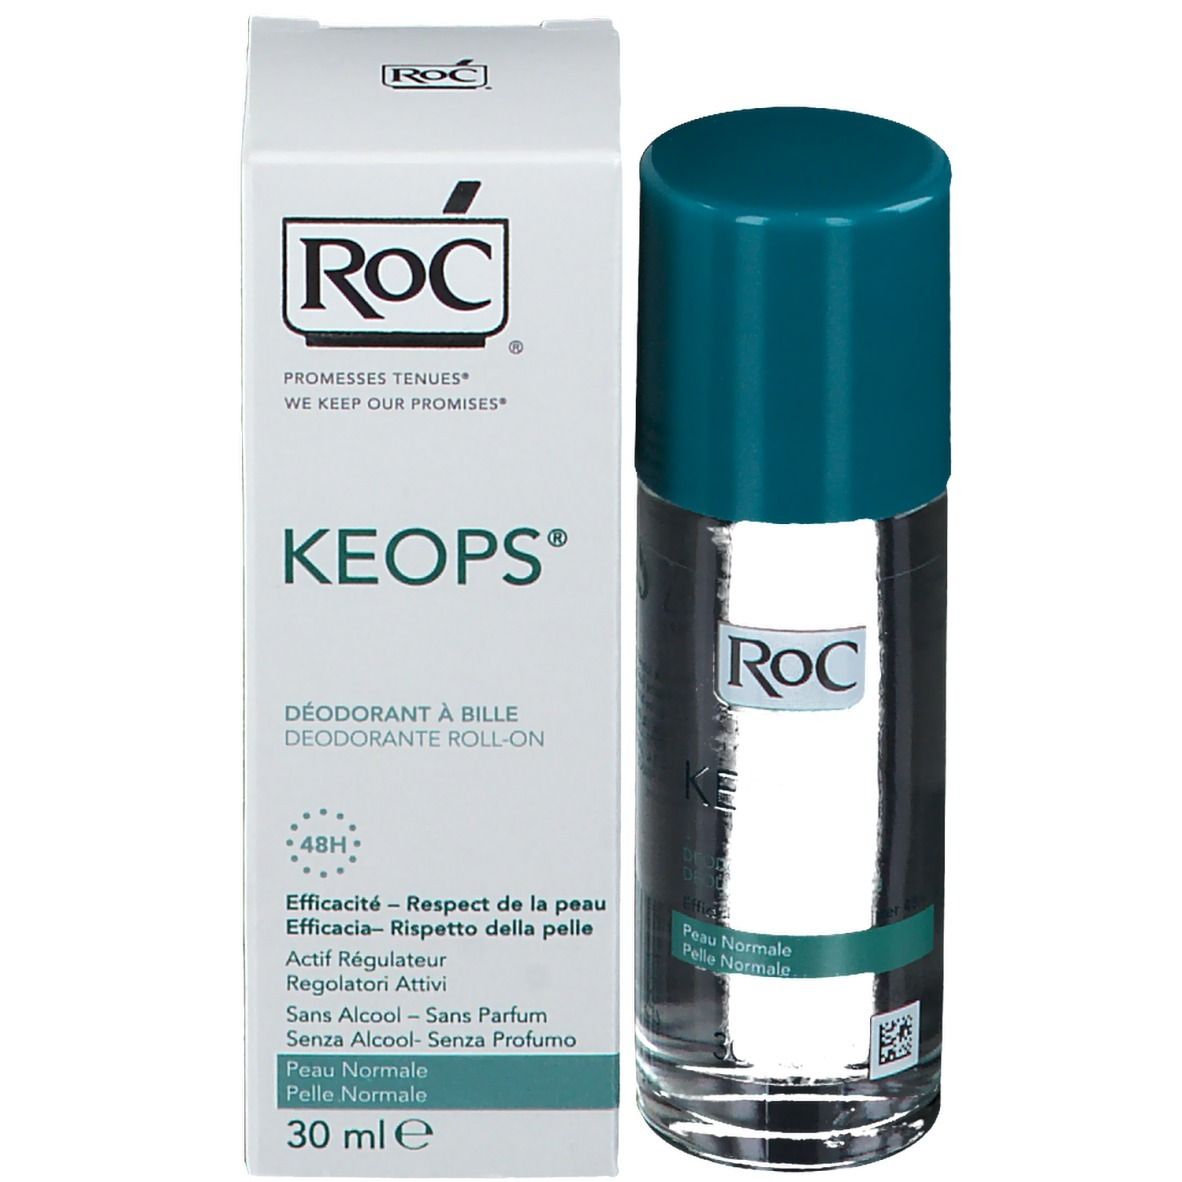 Roc® KEOPS Deodorante roll-on